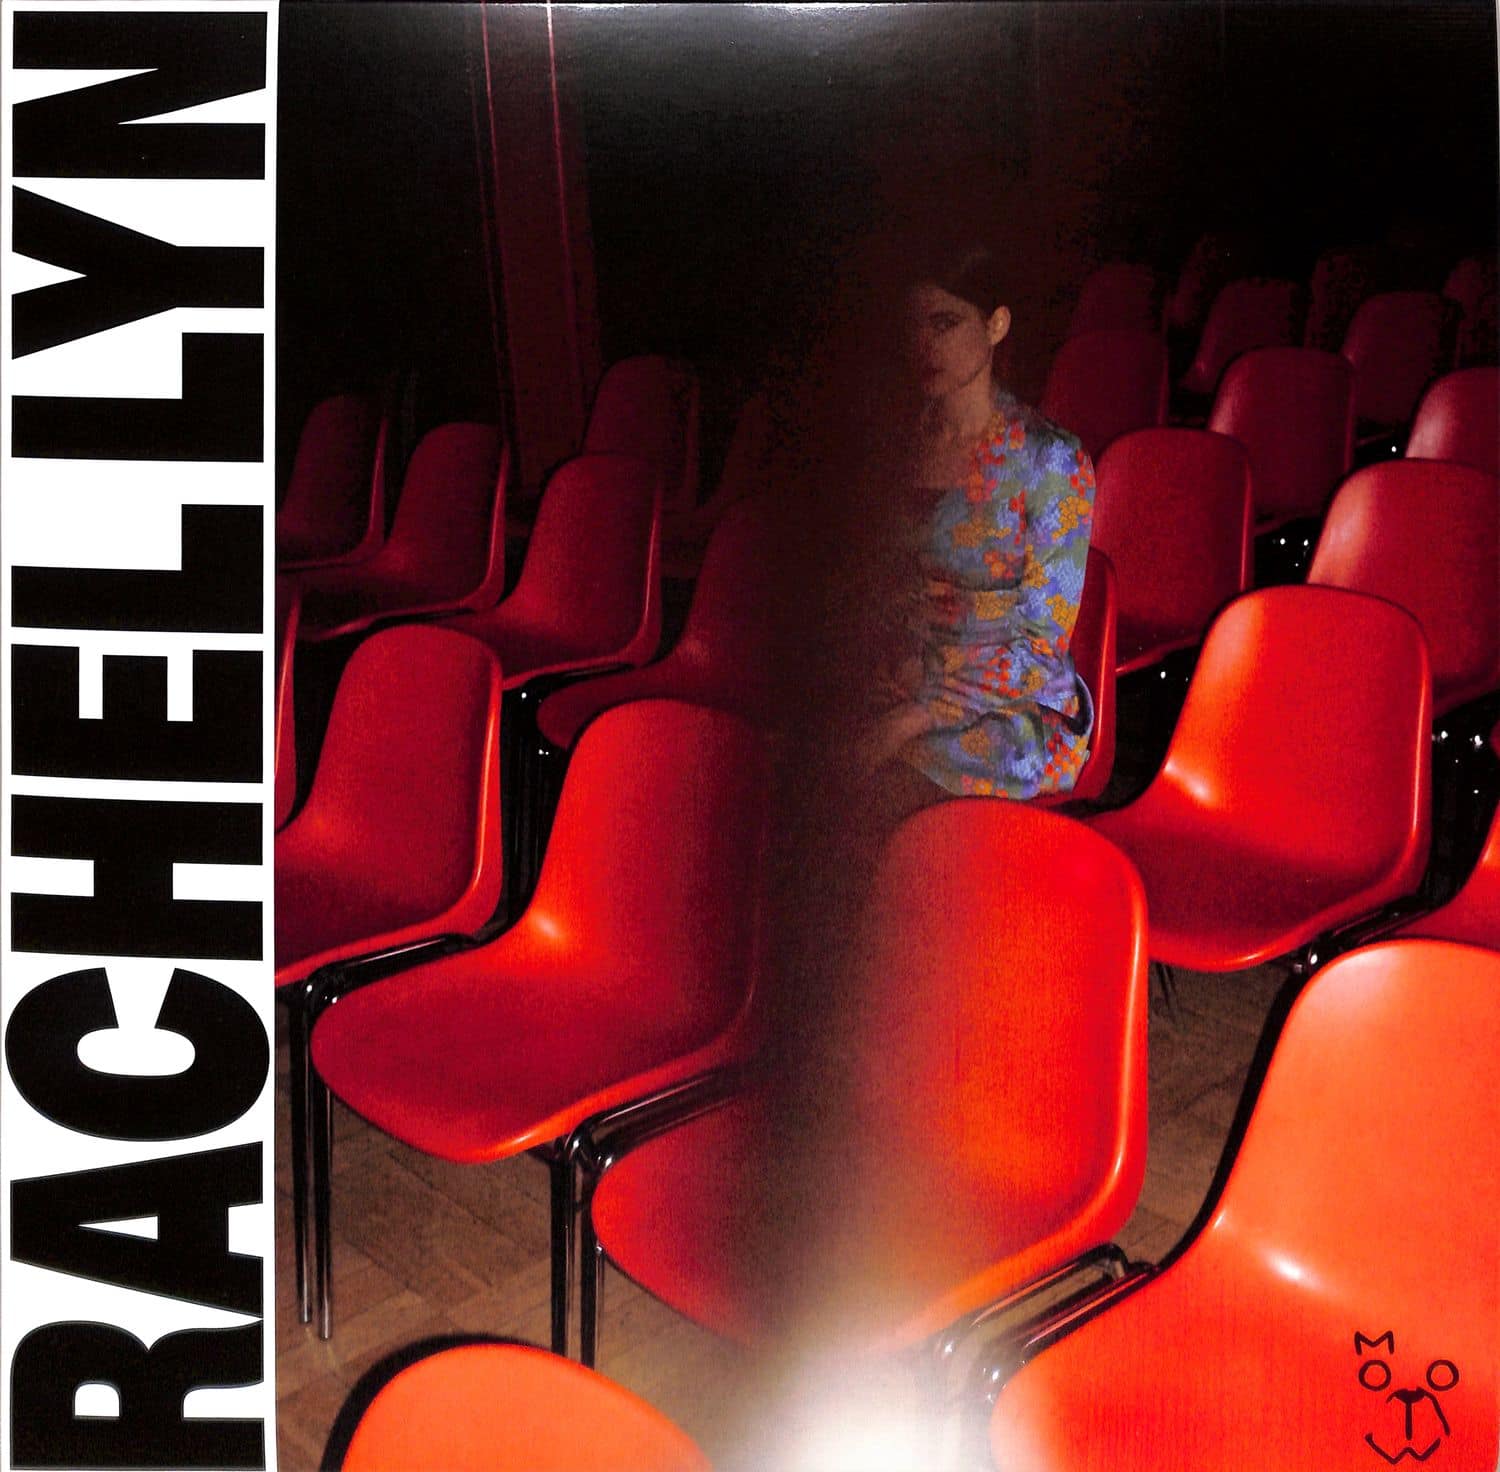 Rachel Lyn - OH DAYDREAM LP